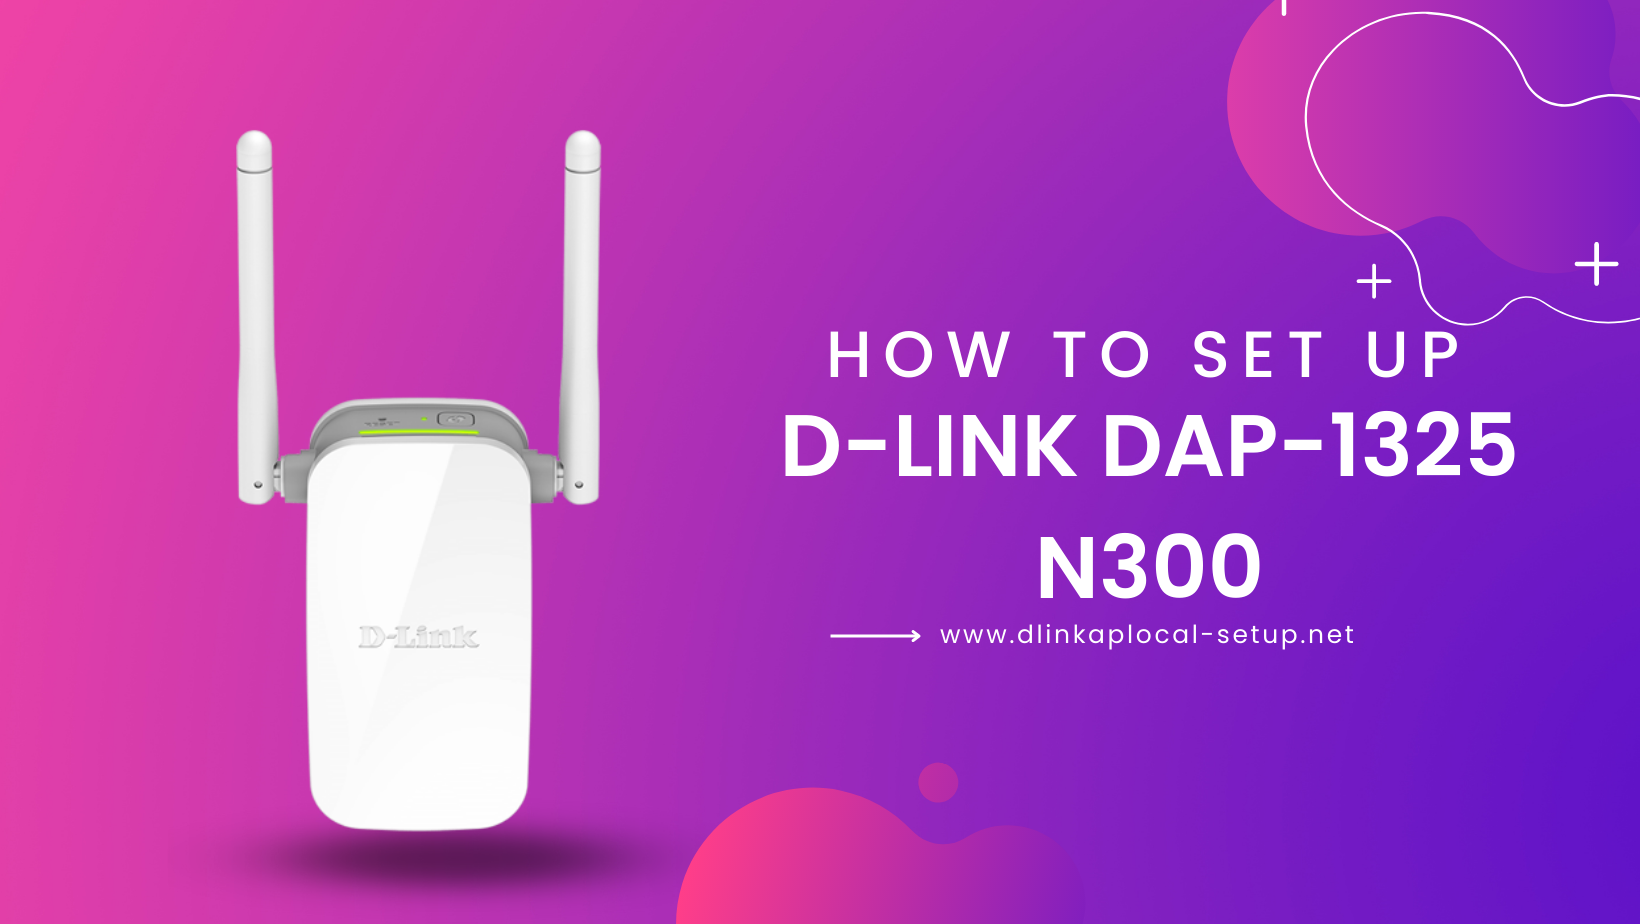 How to Set Up D-Link DAP-1325 N300